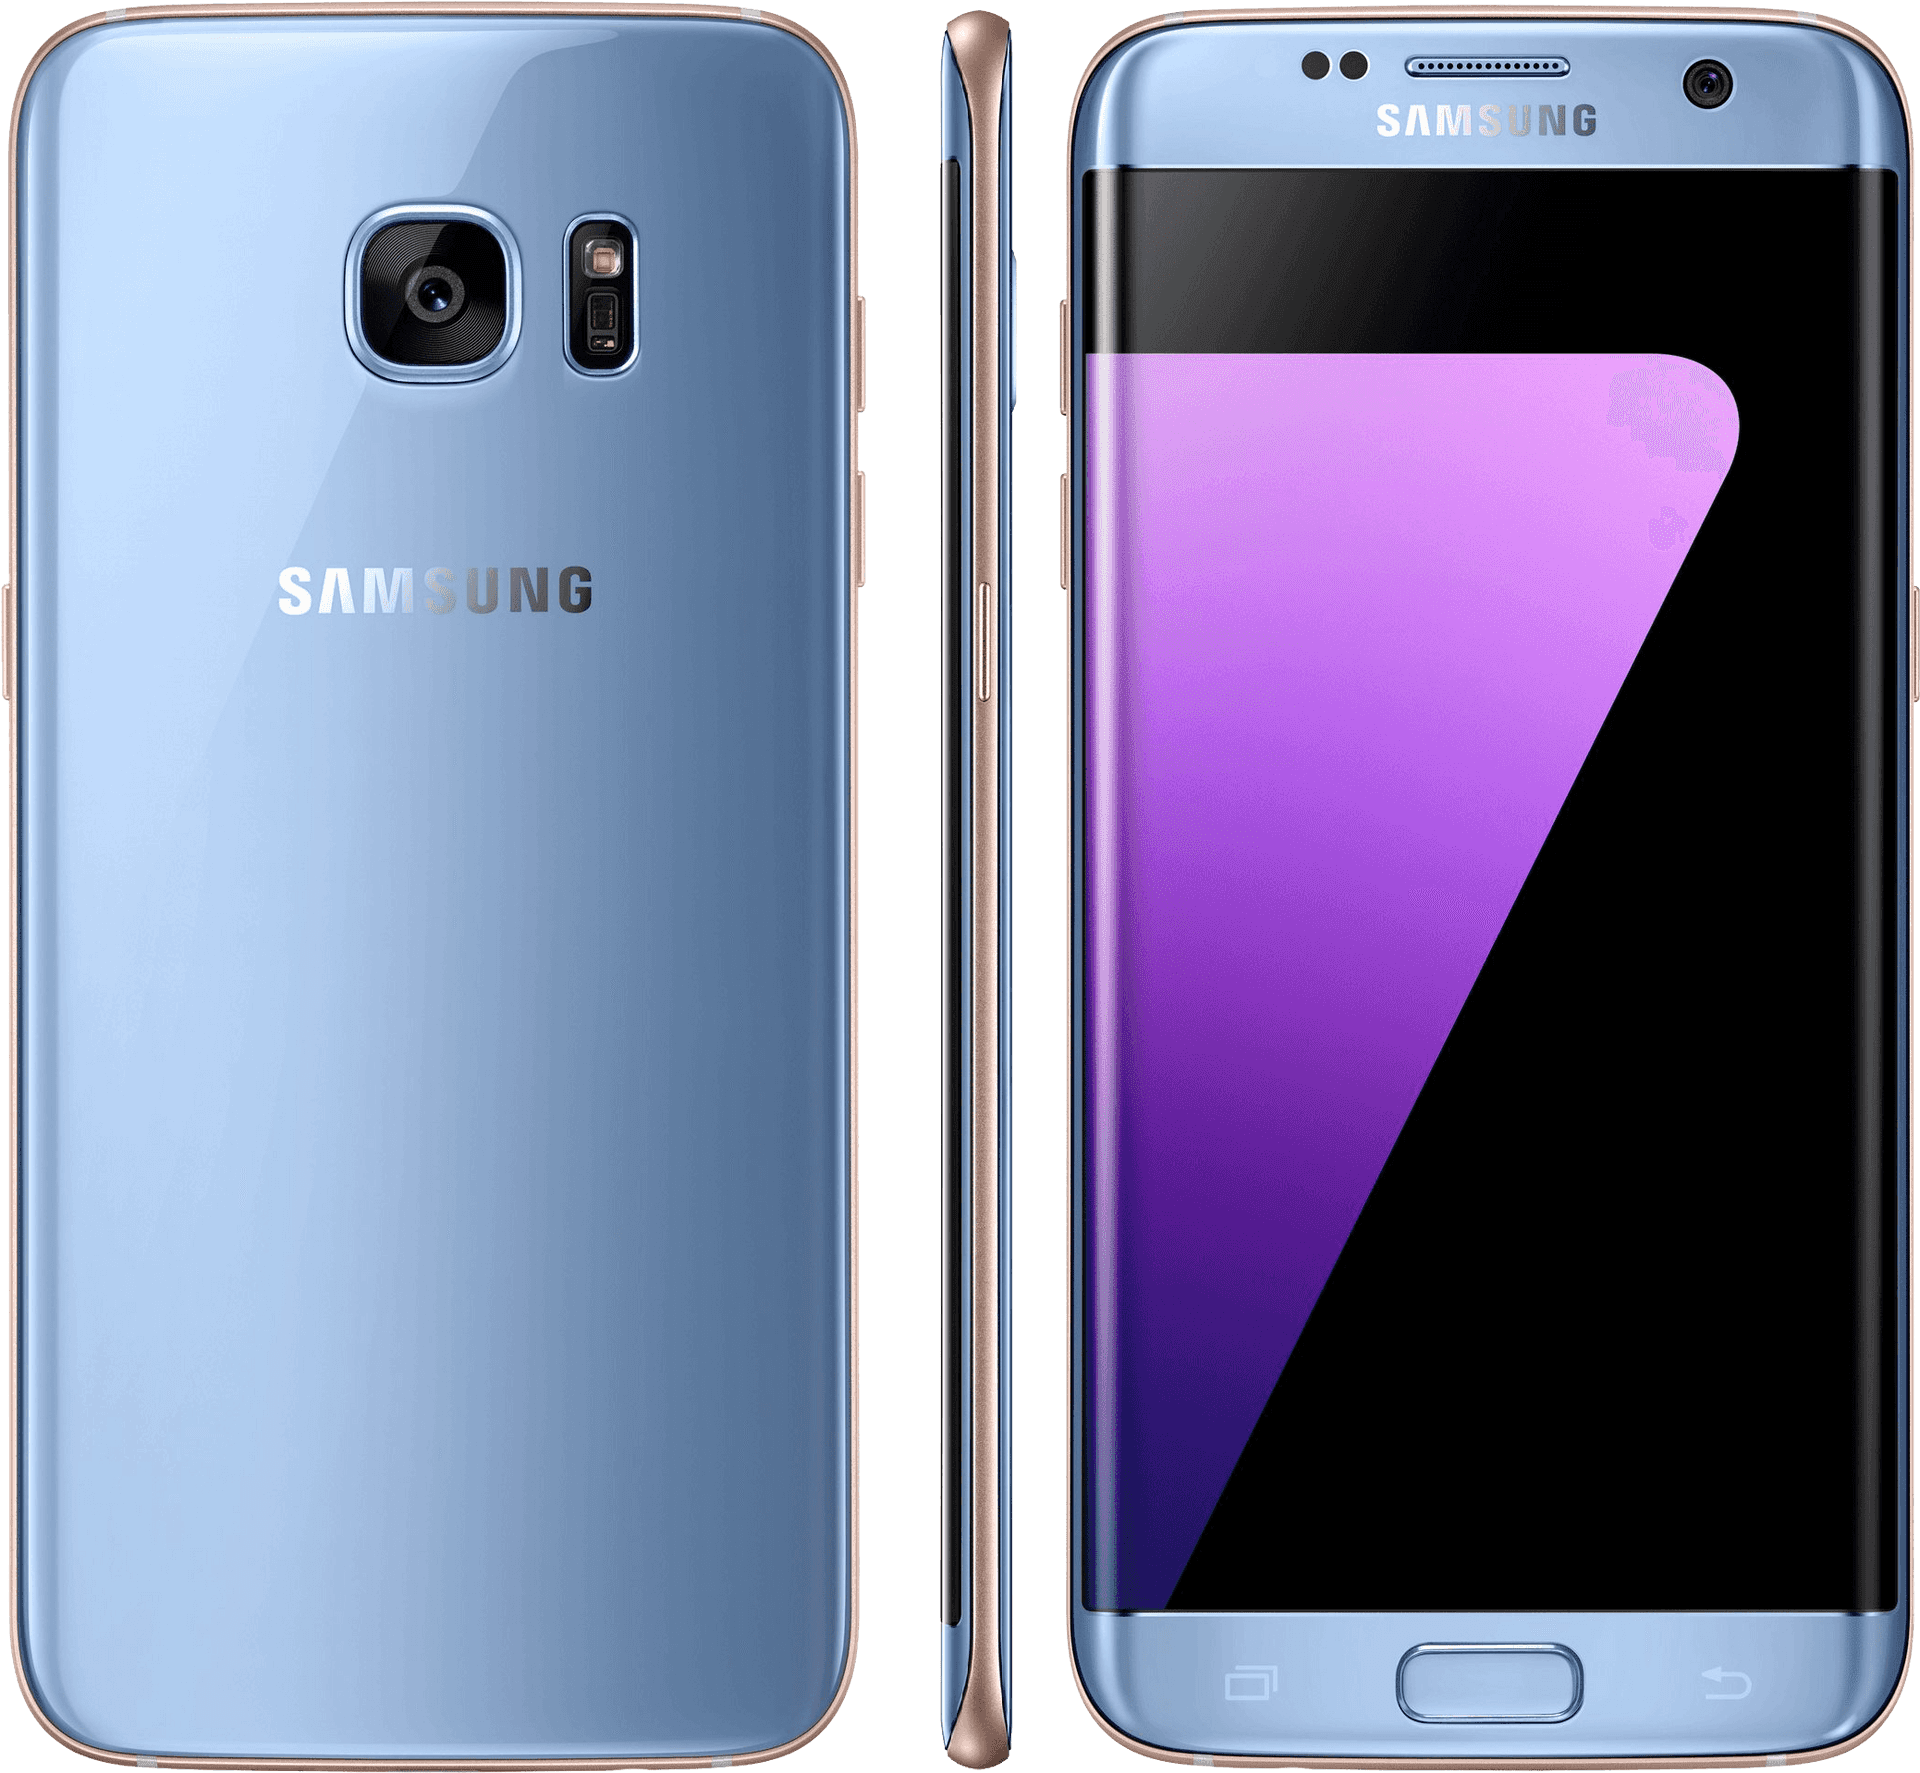 Samsung Smartphone Blue Front Back Side Views PNG image